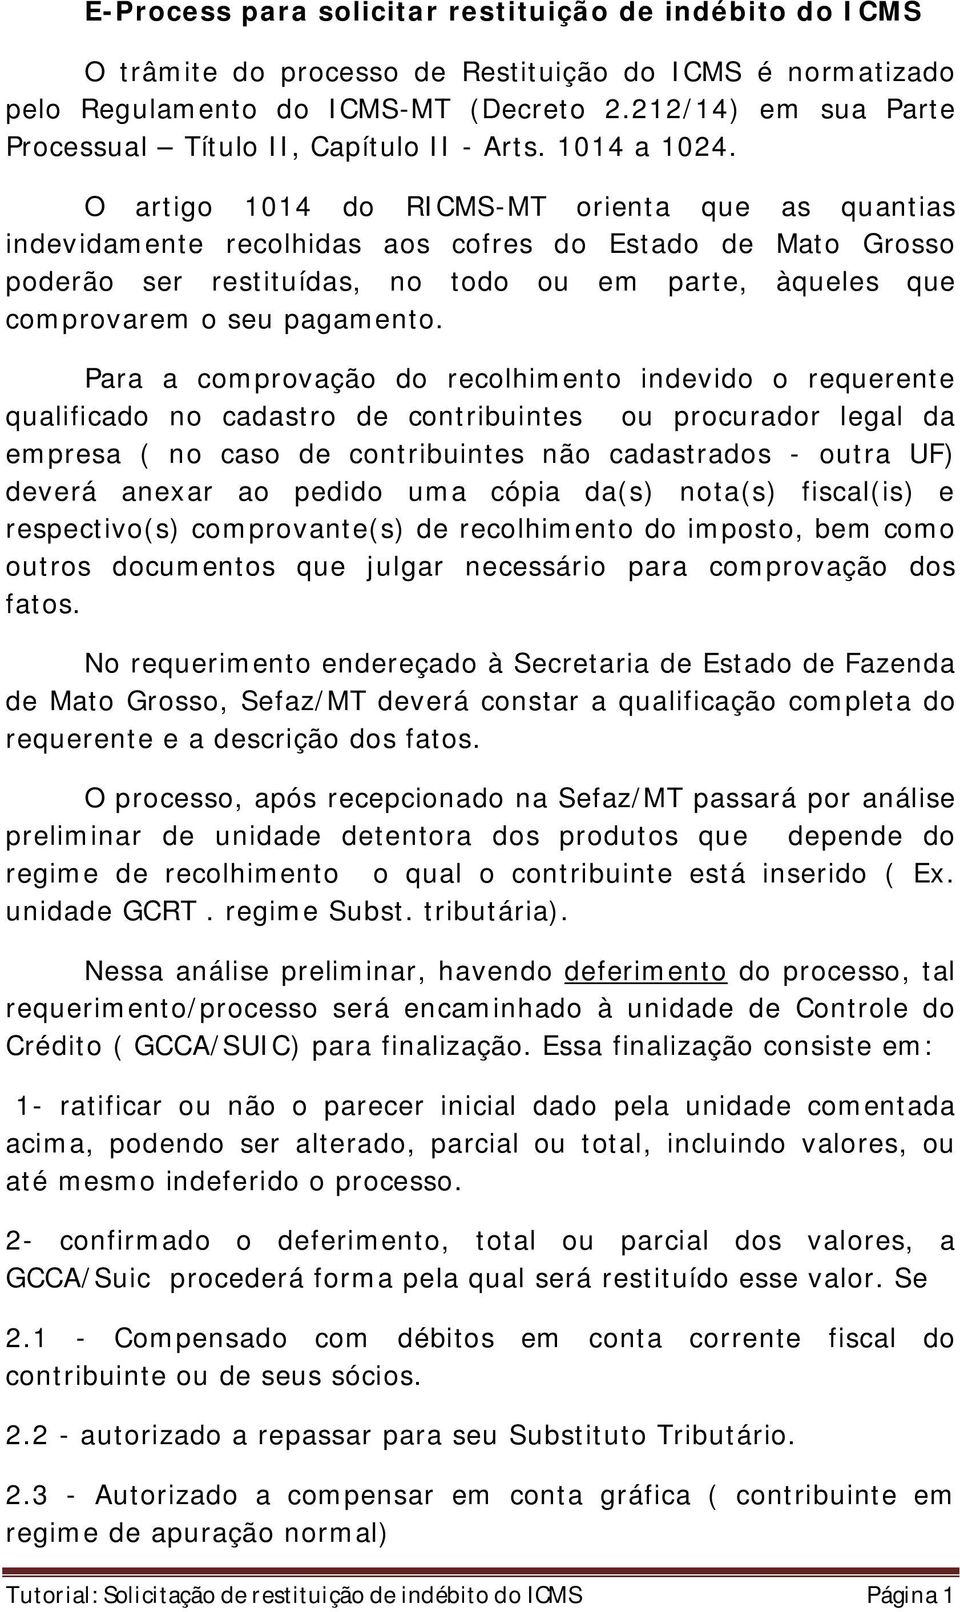 O artigo 1014 do RICMS-MT orienta que as quantias indevidamente recolhidas aos cofres do Estado de Mato Grosso poderão ser restituídas, no todo ou em parte, àqueles que comprovarem o seu pagamento.